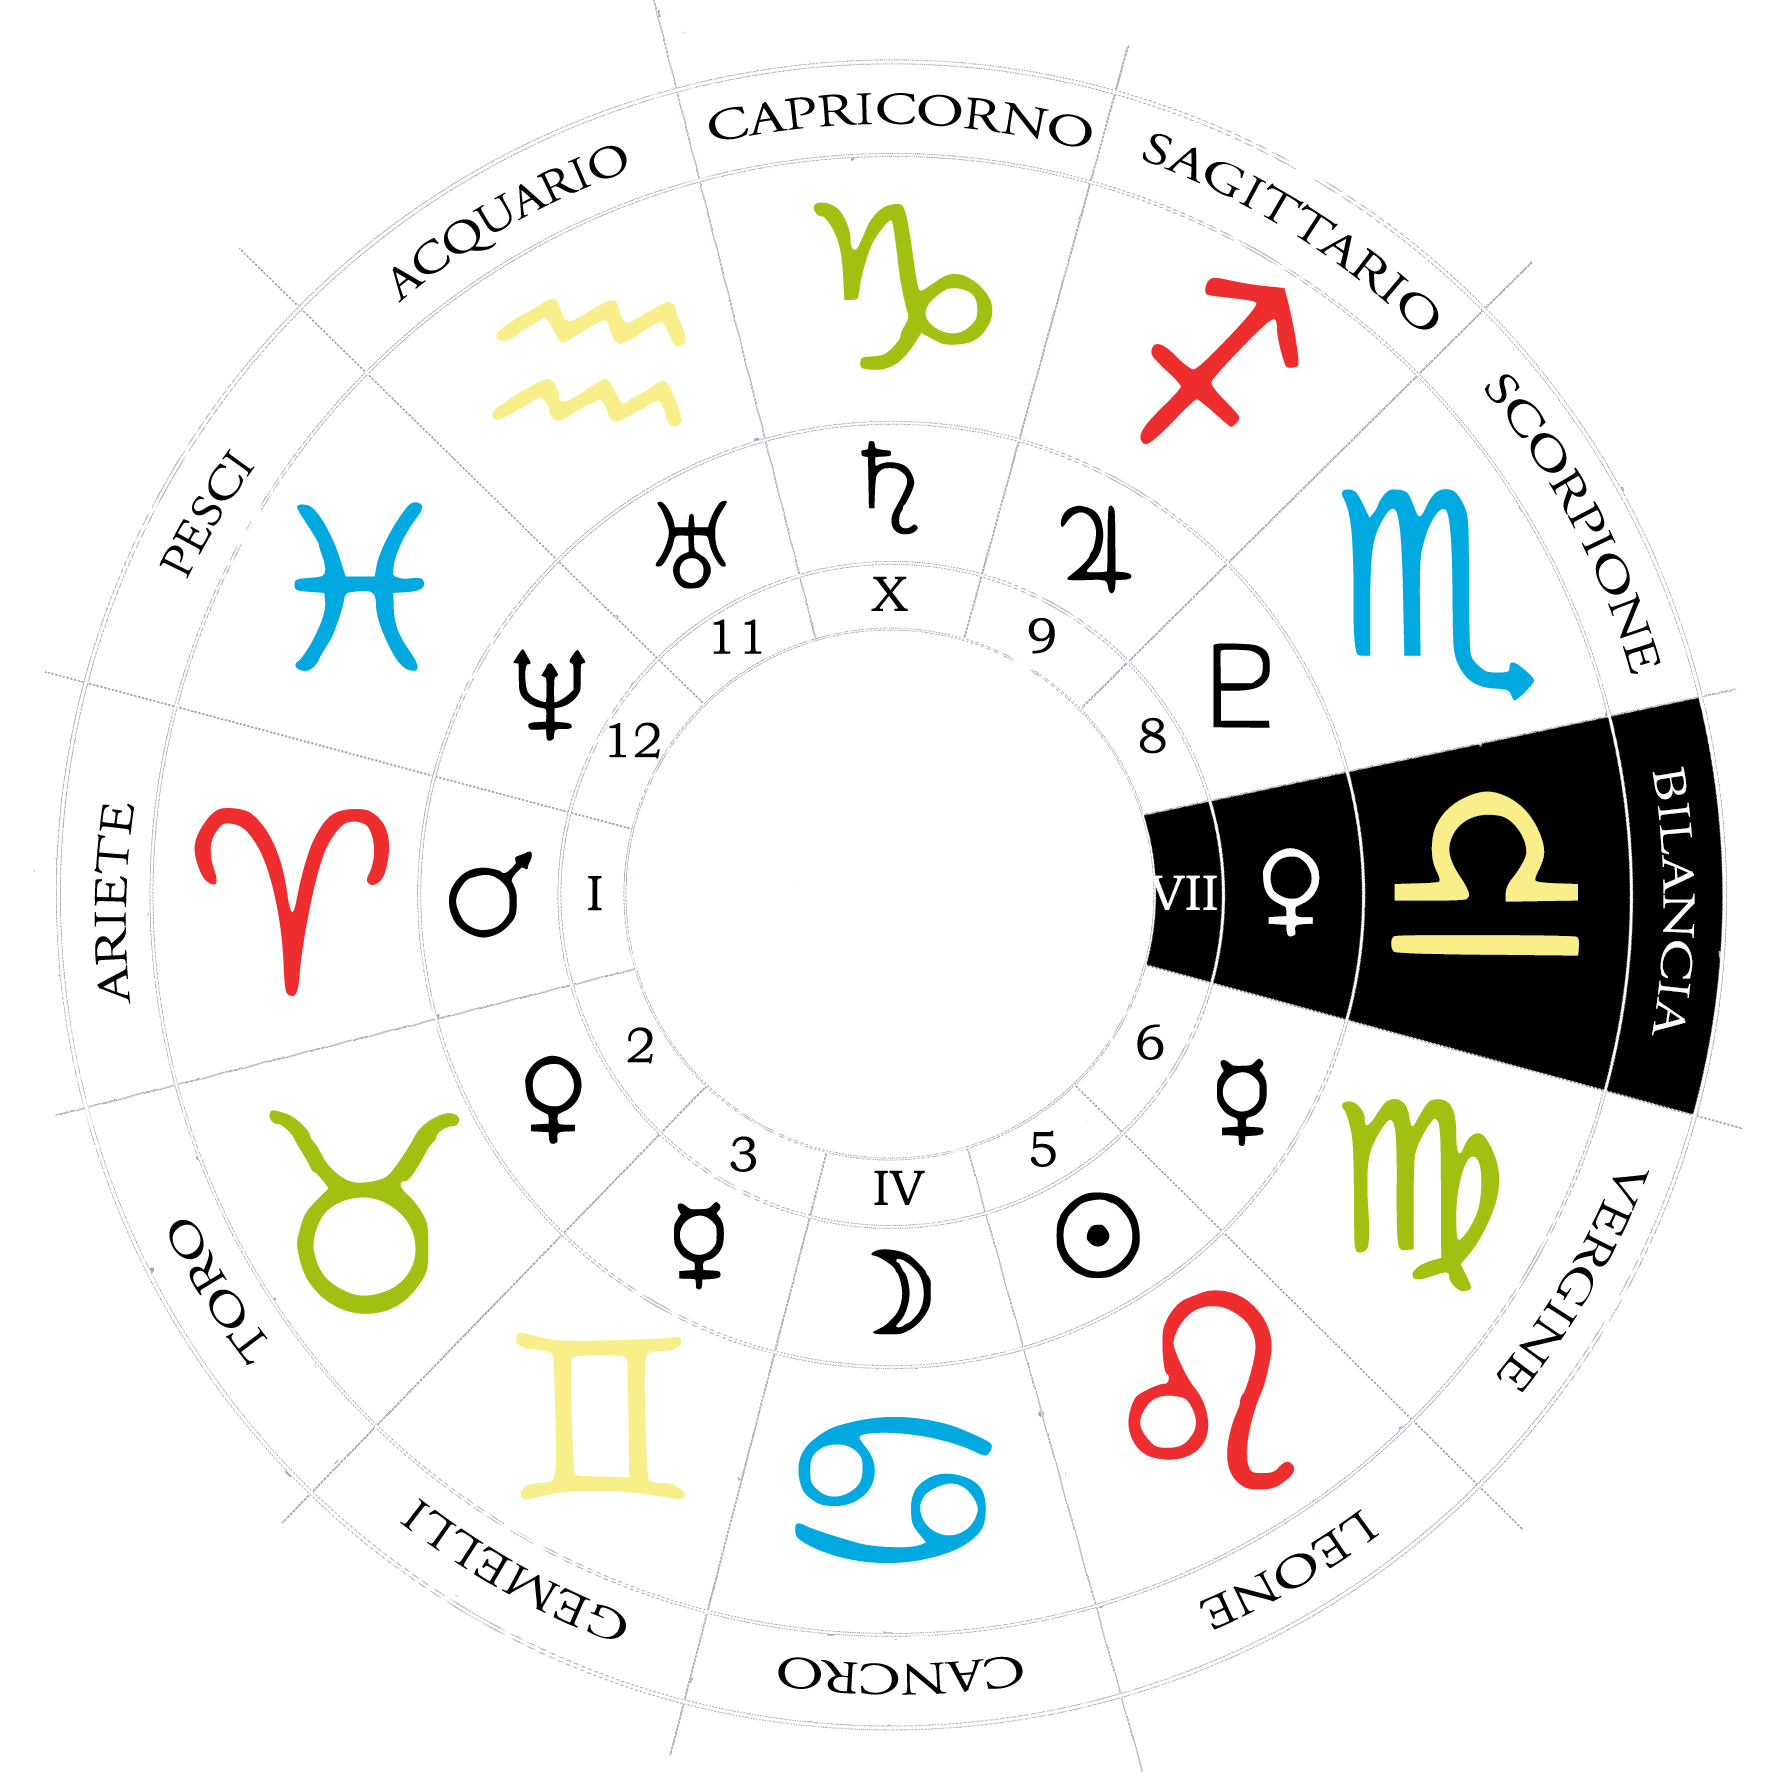 Rumah astrologi ketujuh